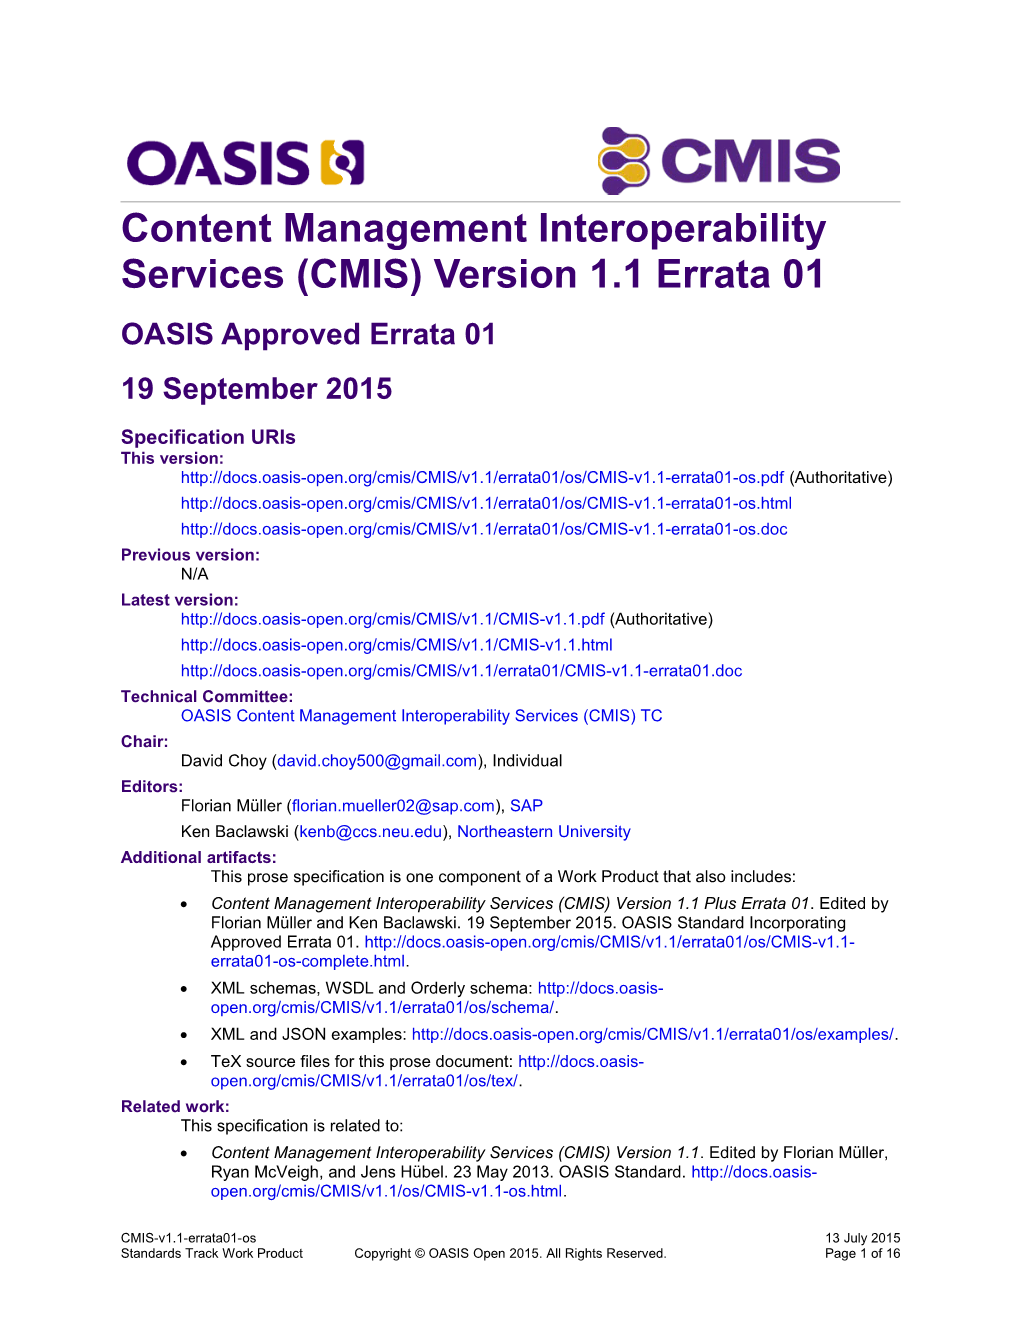 Content Management Interoperability Services (CMIS) Version 1.1 Errata 01